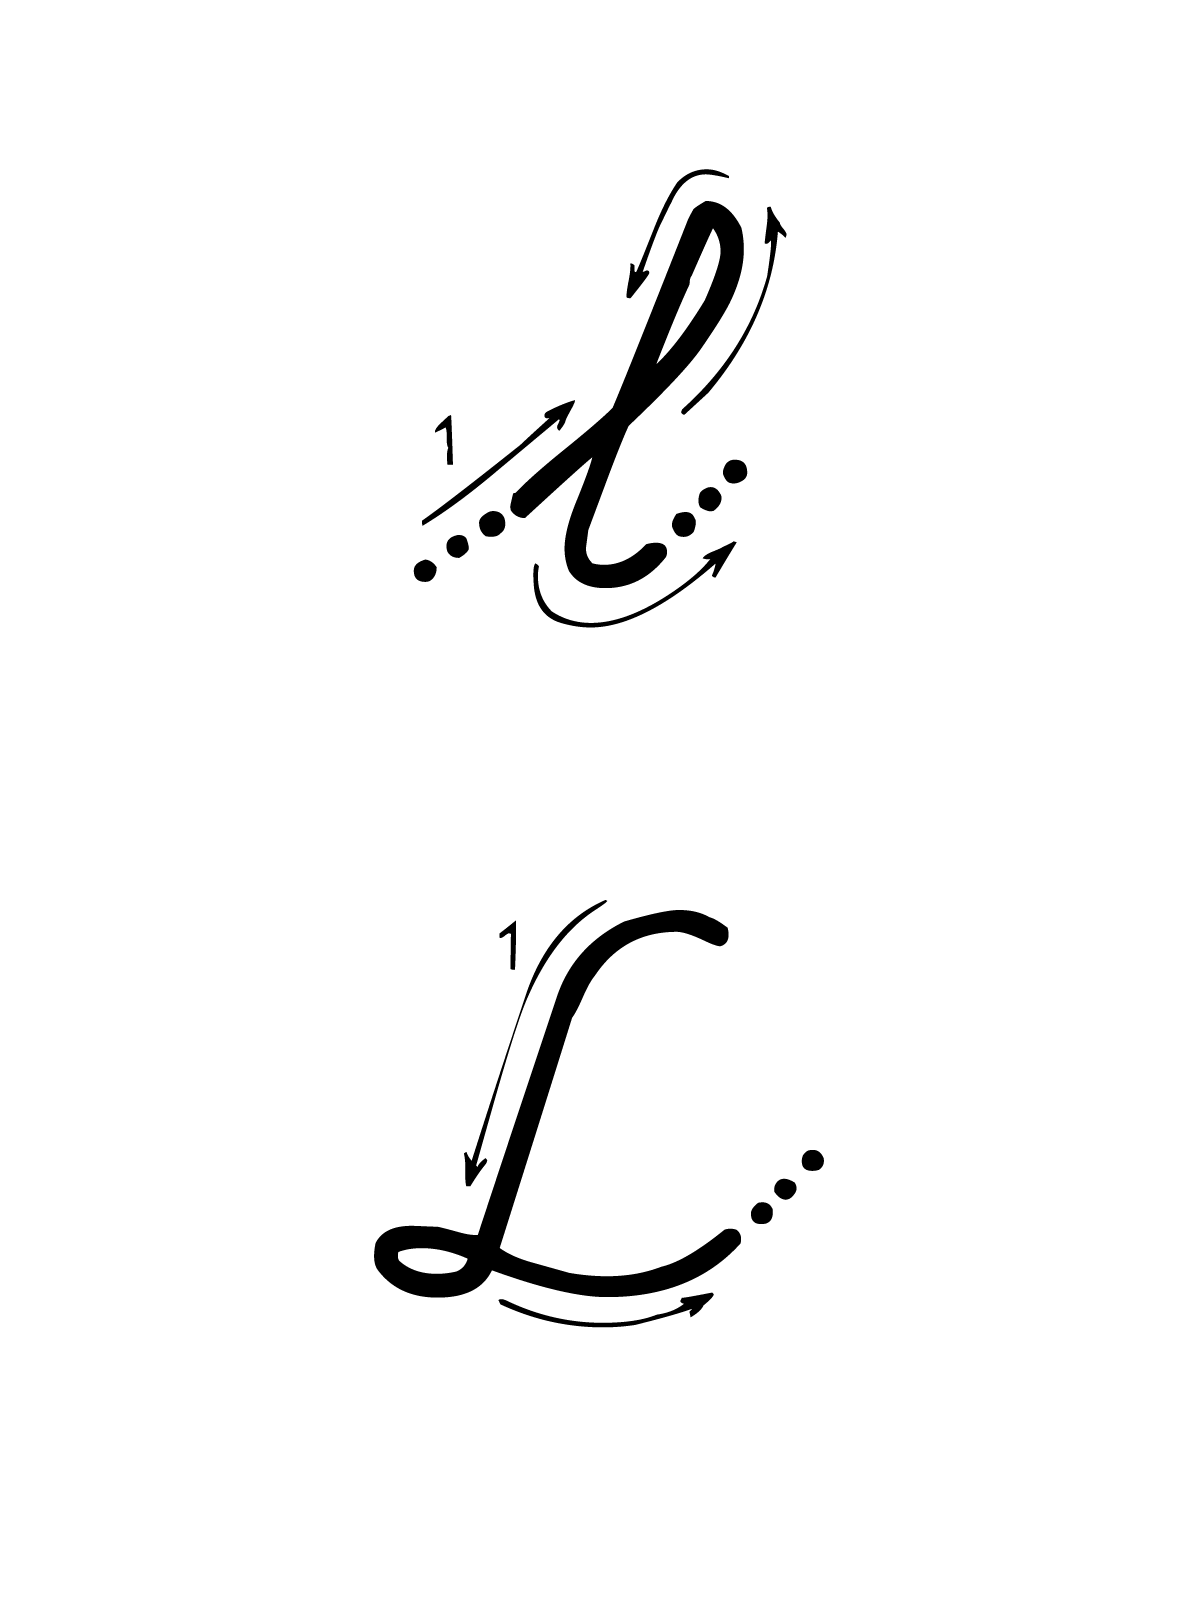 Lettere e numeri - Lettera L con indicazioni movimento corsivo maiuscolo e minuscolo